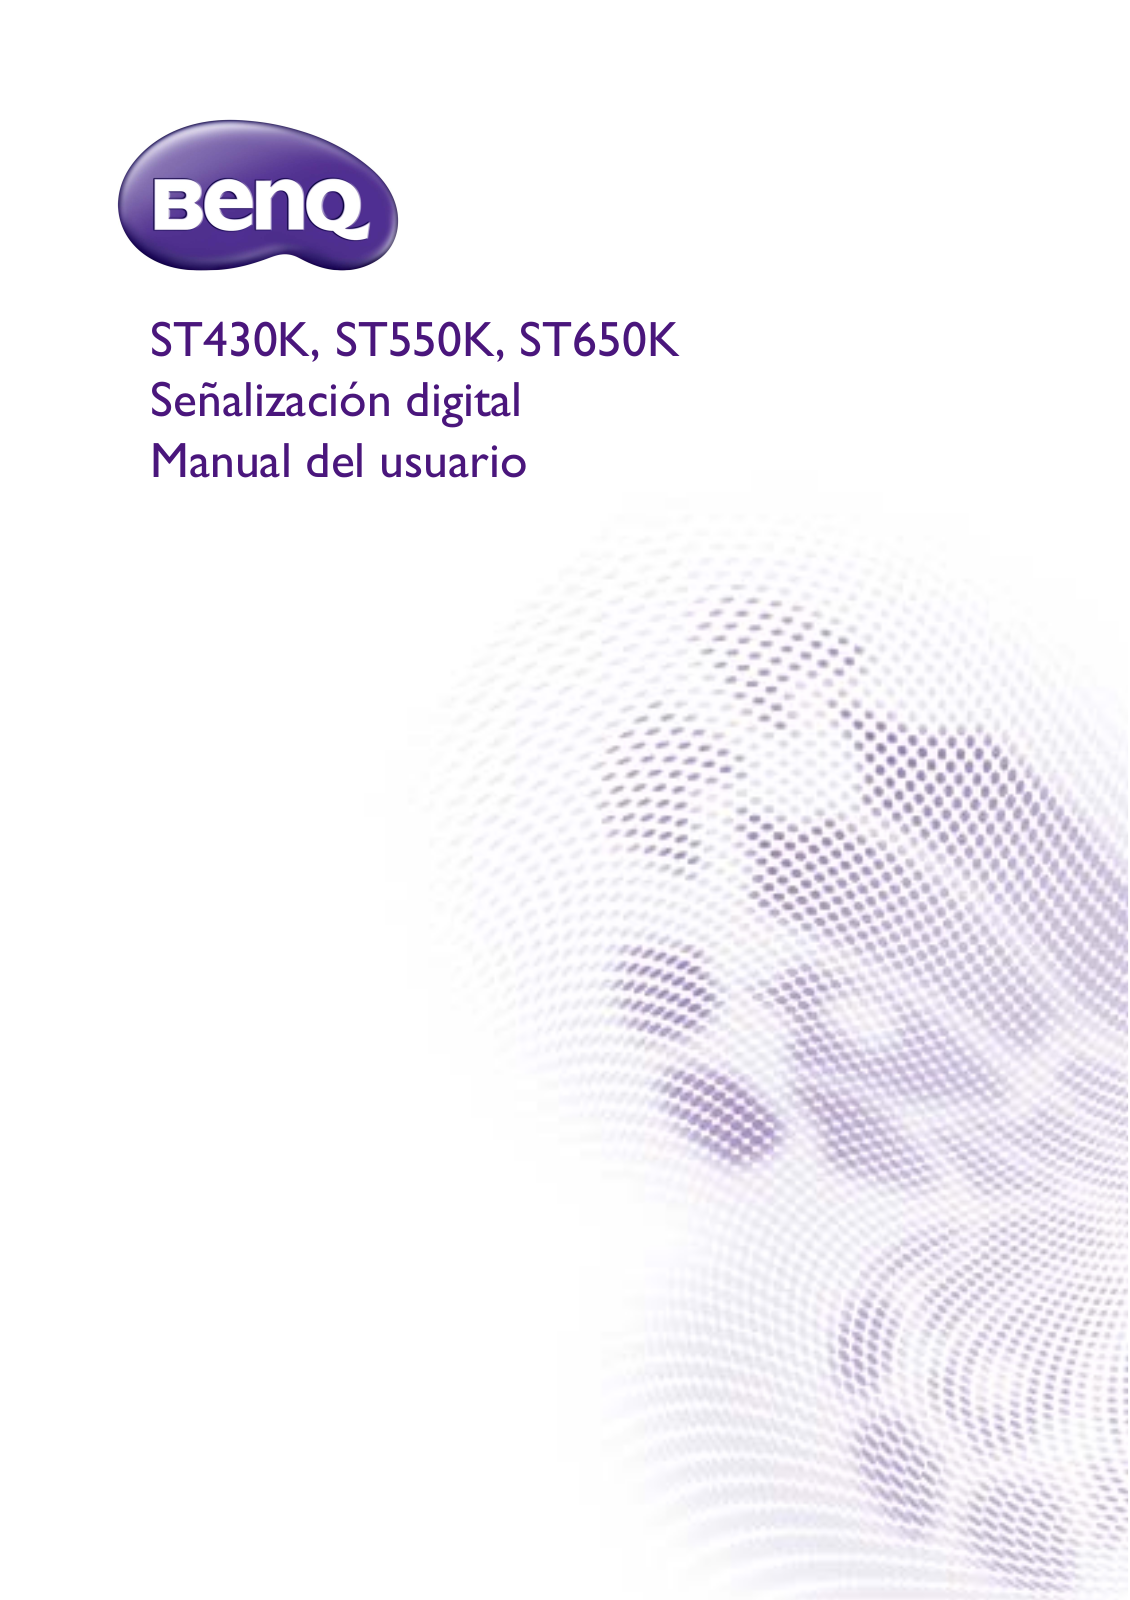 Benq ST430K, ST550K, ST650K User Manual